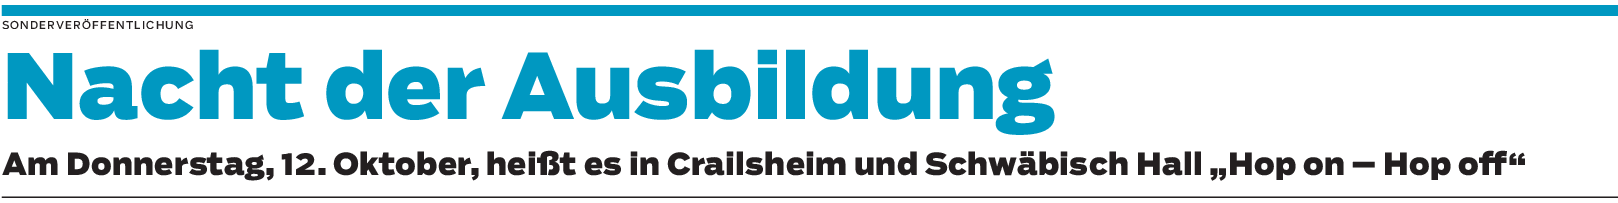 Nacht der Ausbildung in Schwäbisch Hall und Crailsheim: Einblicke in die Berufswelt